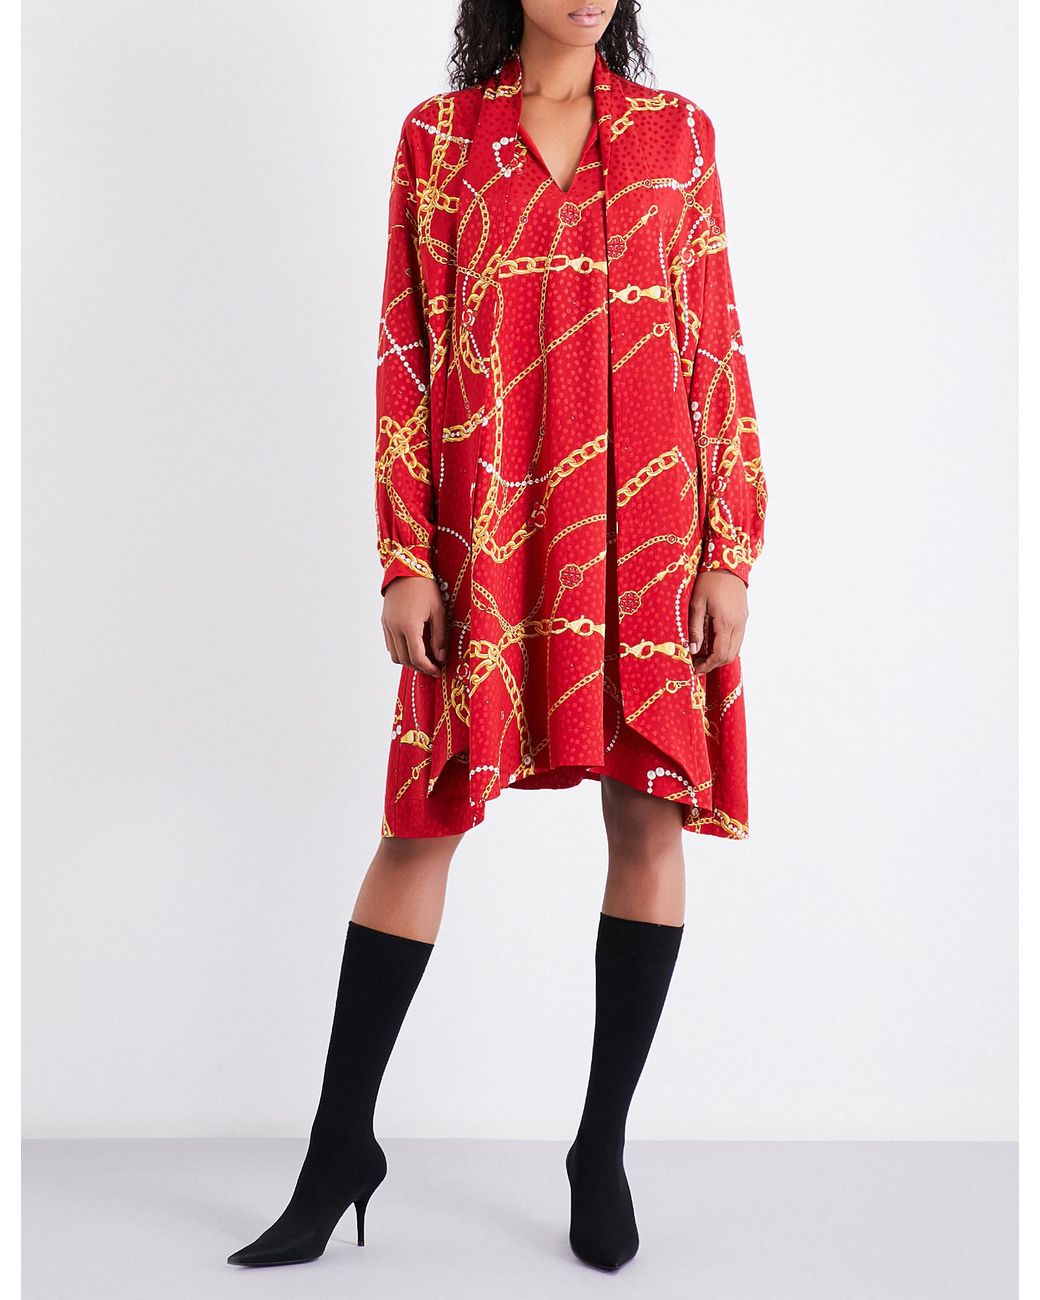 Balenciaga Chain-print Silk Dress in Red | Lyst